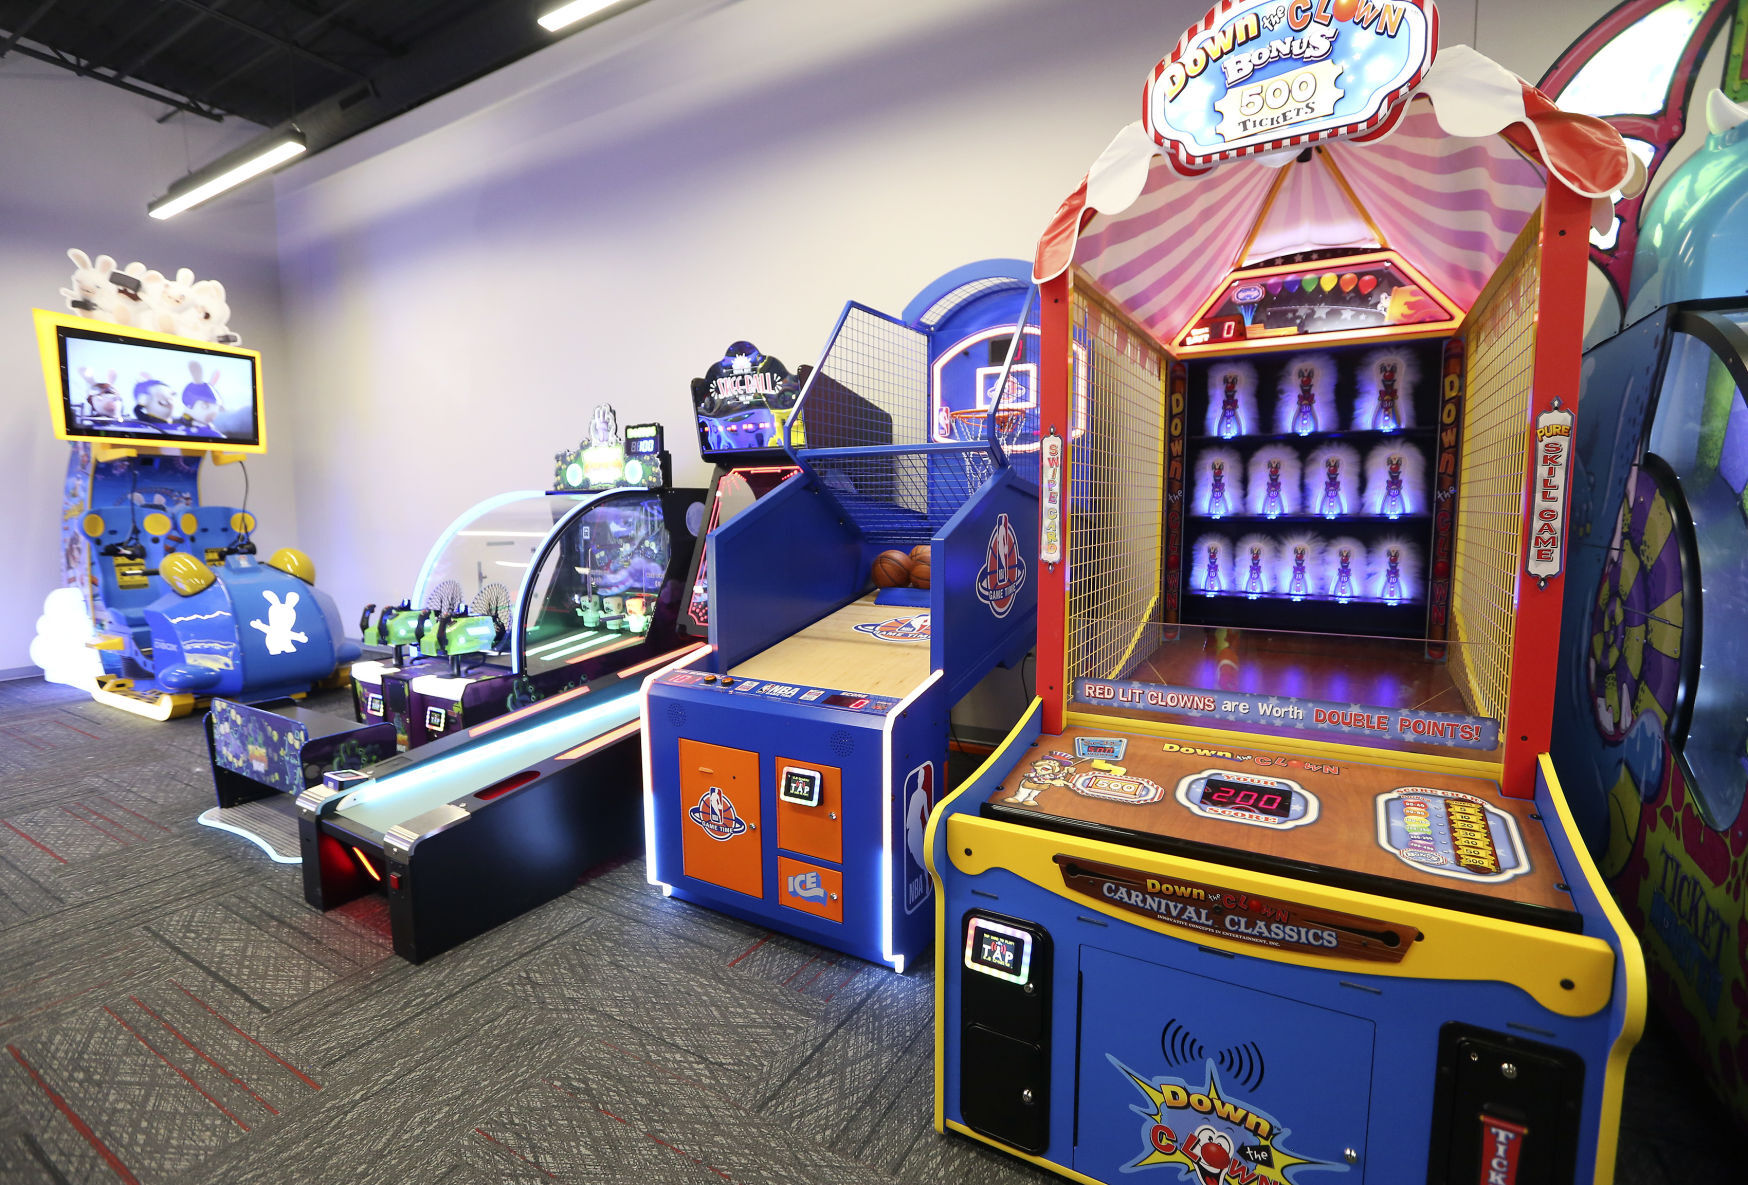 The arcade at Round Two in Peosta, Iowa, on Wednesday, Nov. 25, 2020. PHOTO CREDIT: NICKI KOHL